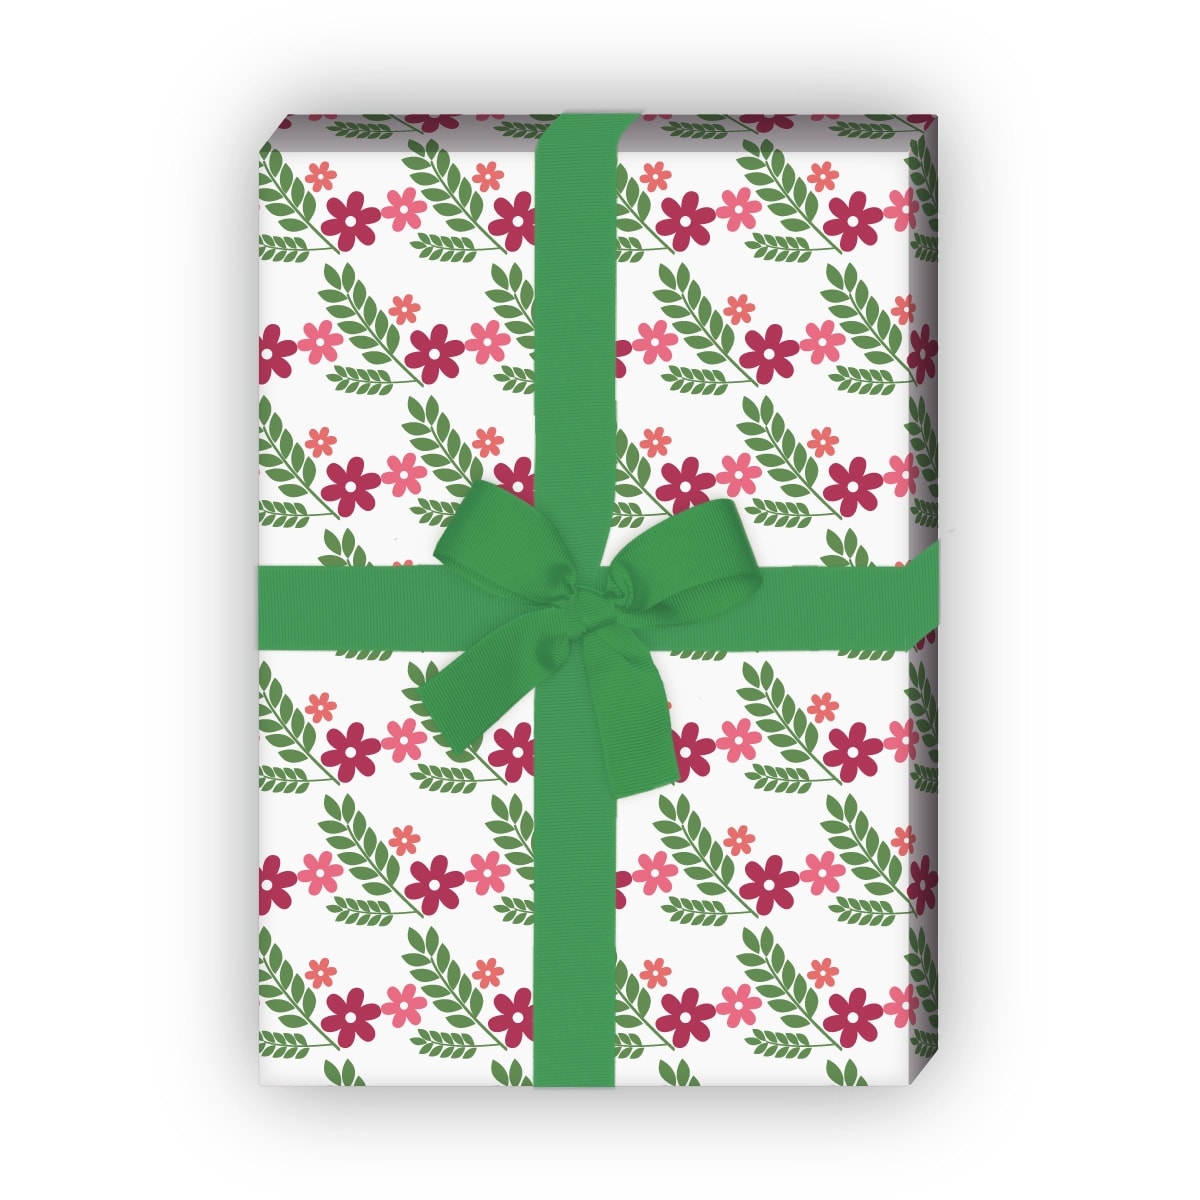 Kartenkaufrausch: Schönes Geschenkpapier mit Streu-Blumen aus unserer florale Papeterie in weiß